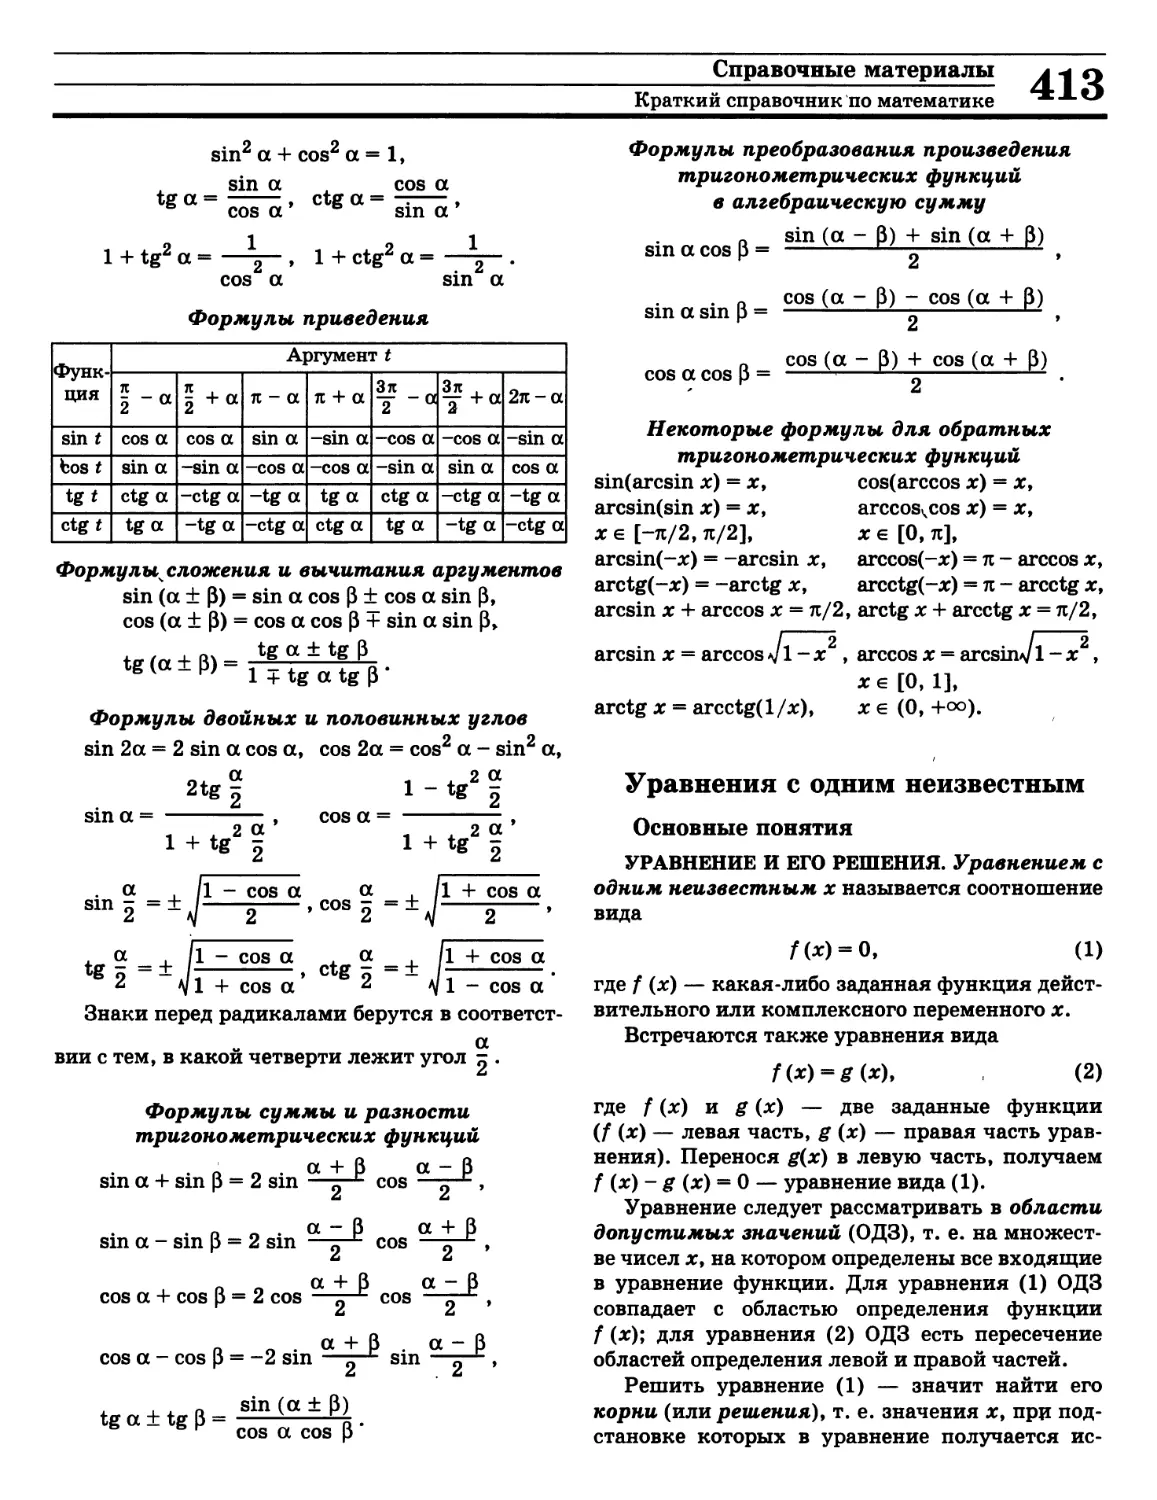 Корень уравнения
О
Решение алгебраического уравнения
Уравнение с одной переменной
Формулы двойных и половинных углов
Формулы преобразования произведения тригонометрических функций в сумму
Формулы приведения
Формулы связывающие обратные тригонометрические функции
Формулы сложения и вычитания аргументов тригонометрических функций
Формулы суммы и разности тригонометрических функций